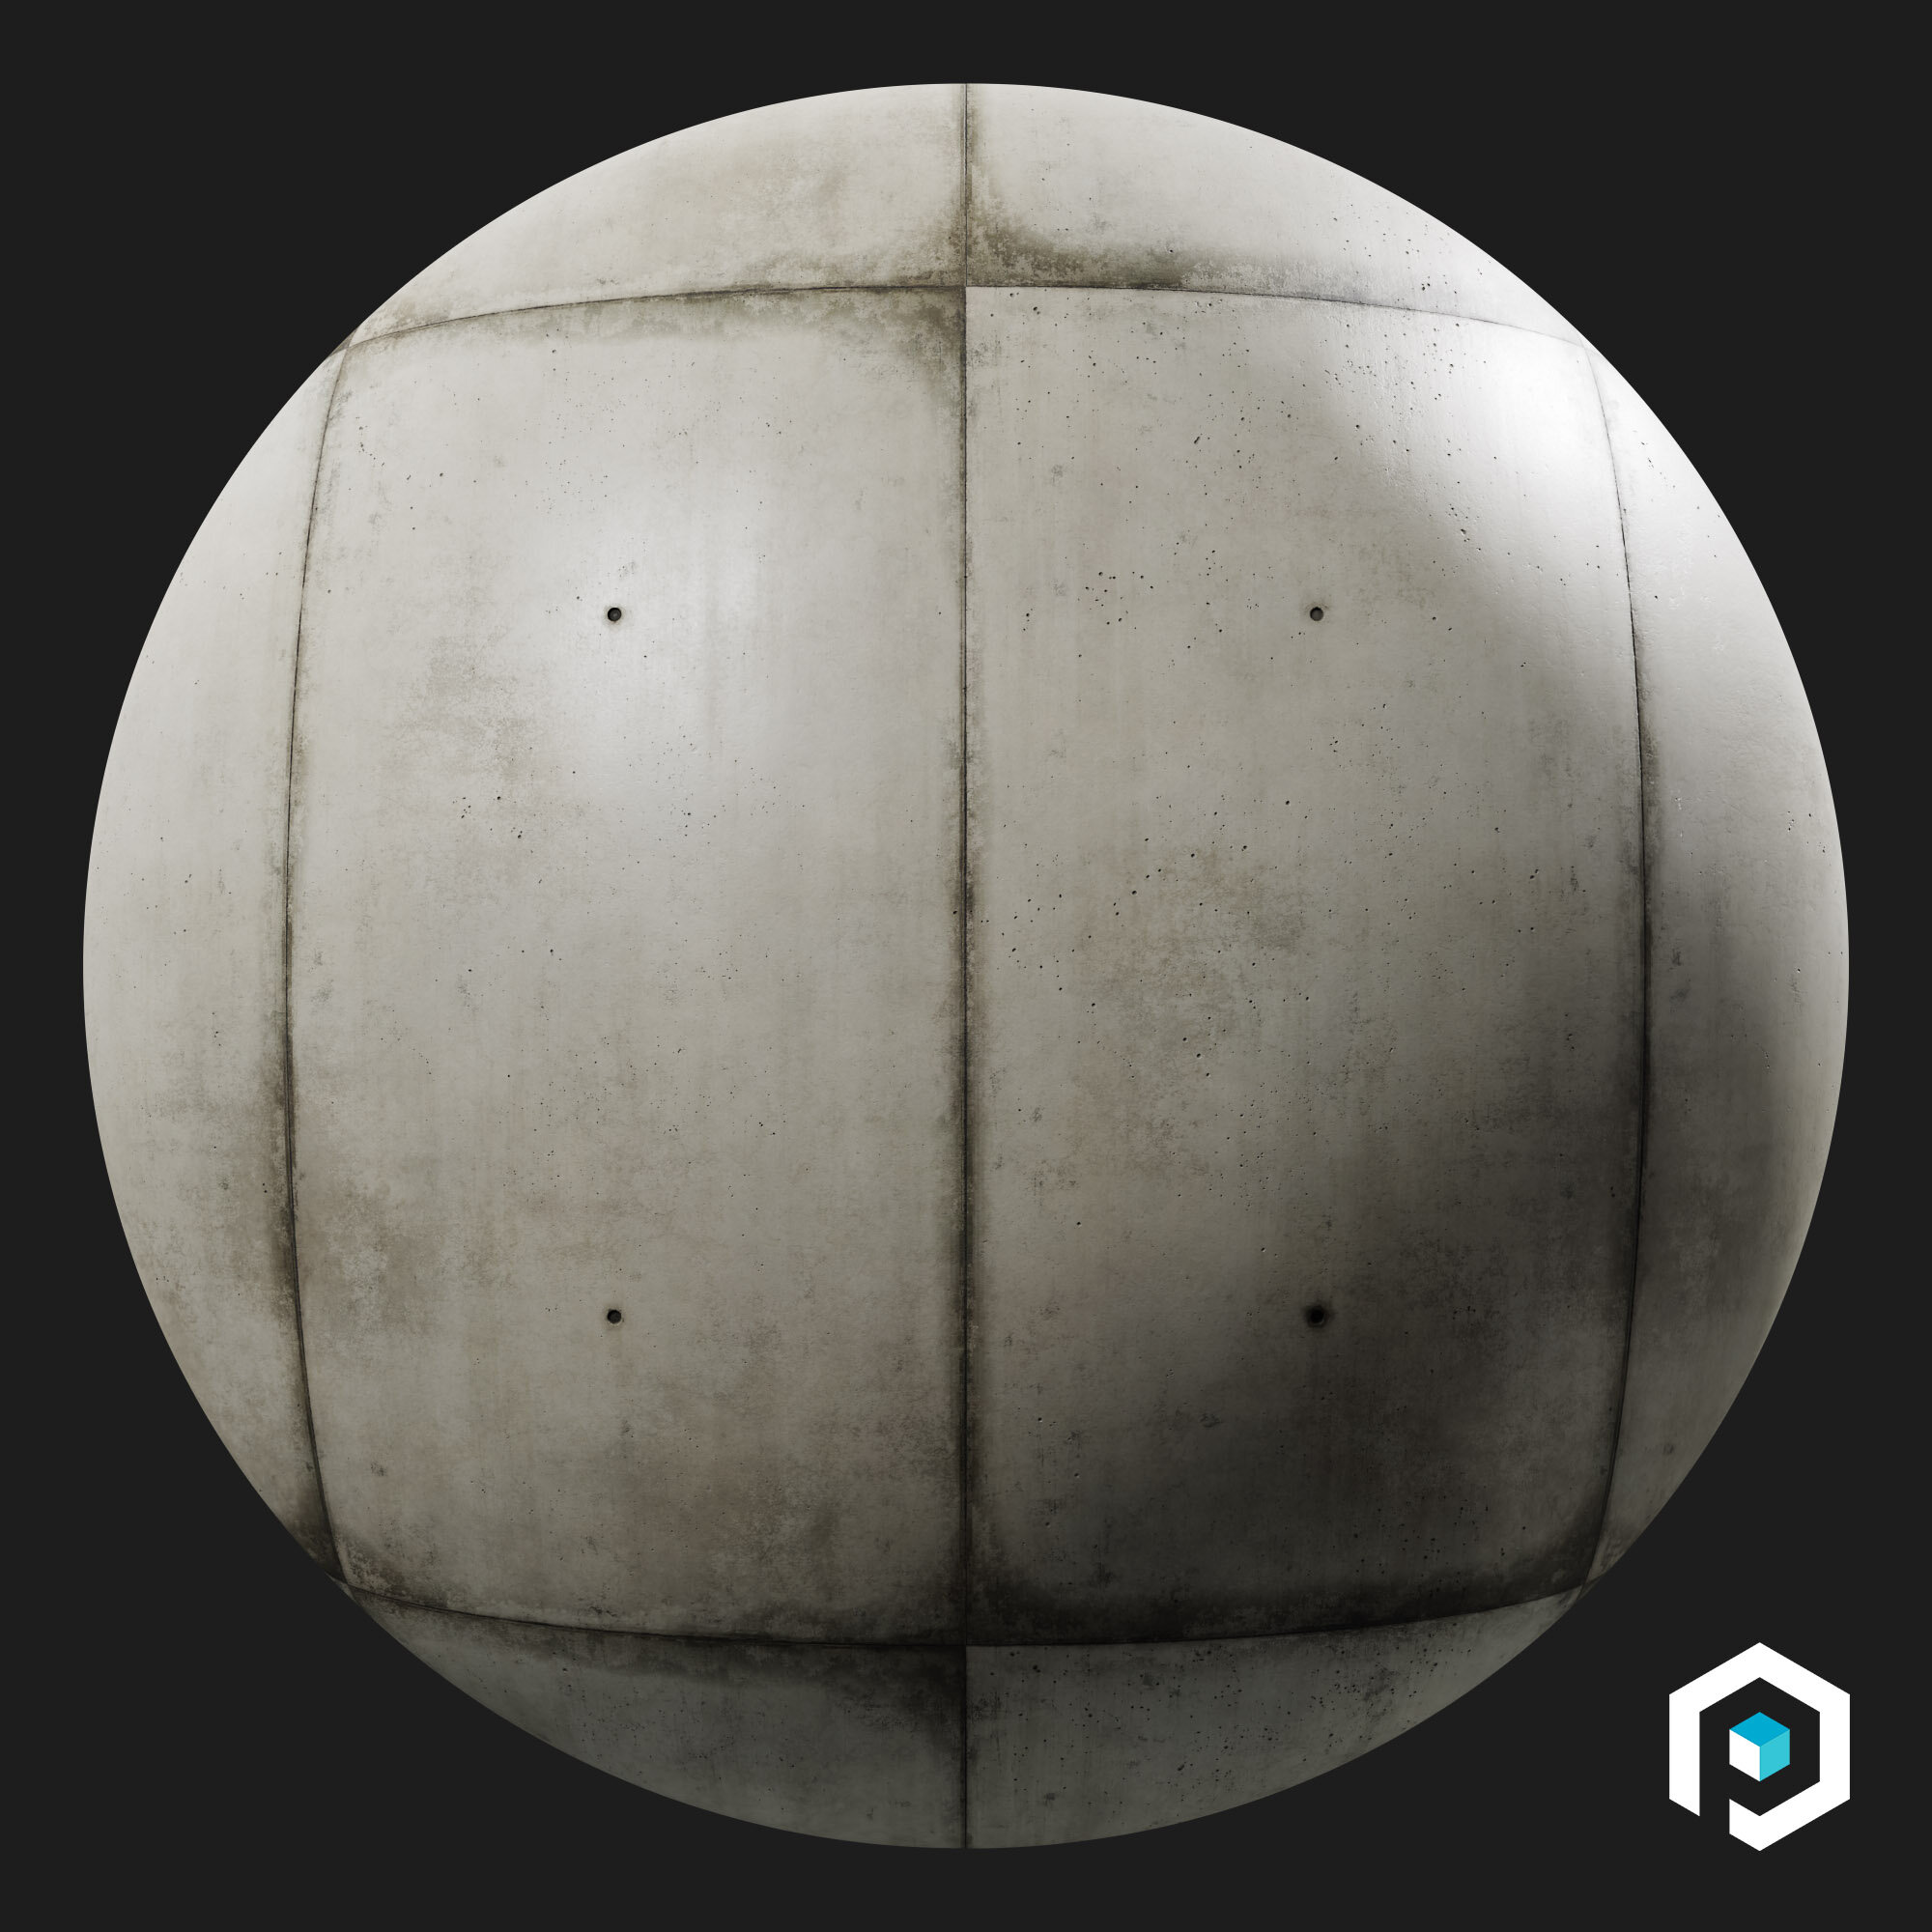 ConcretePanelsVertical001_Sphere.jpg